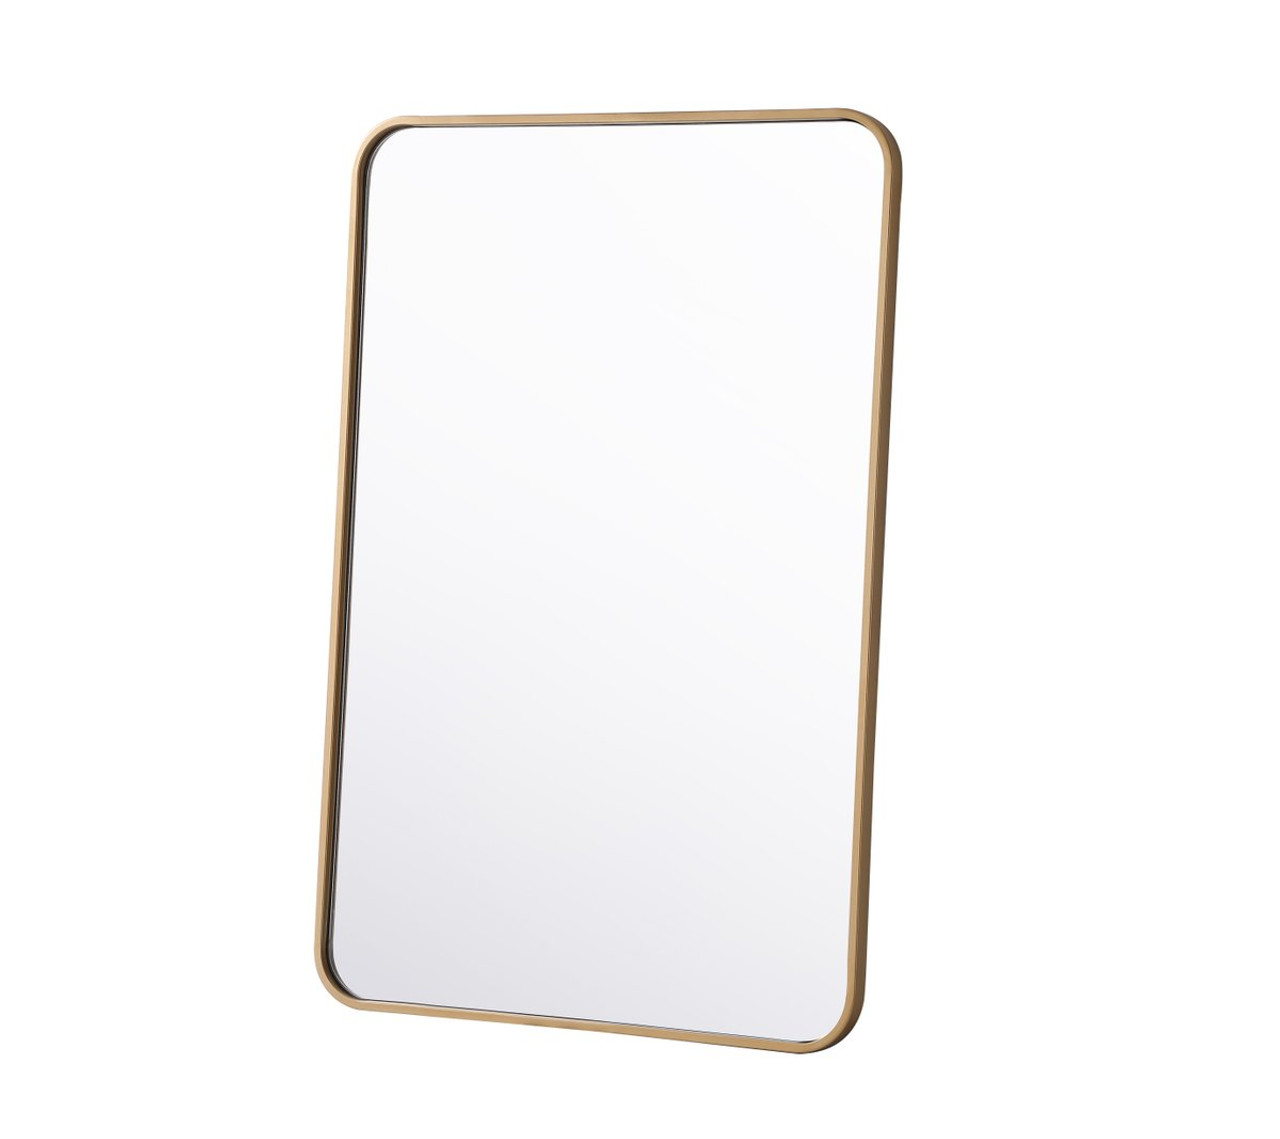 Elegant Decor MR802436BR Soft corner metal rectangular mirror 24x36 inch in Brass